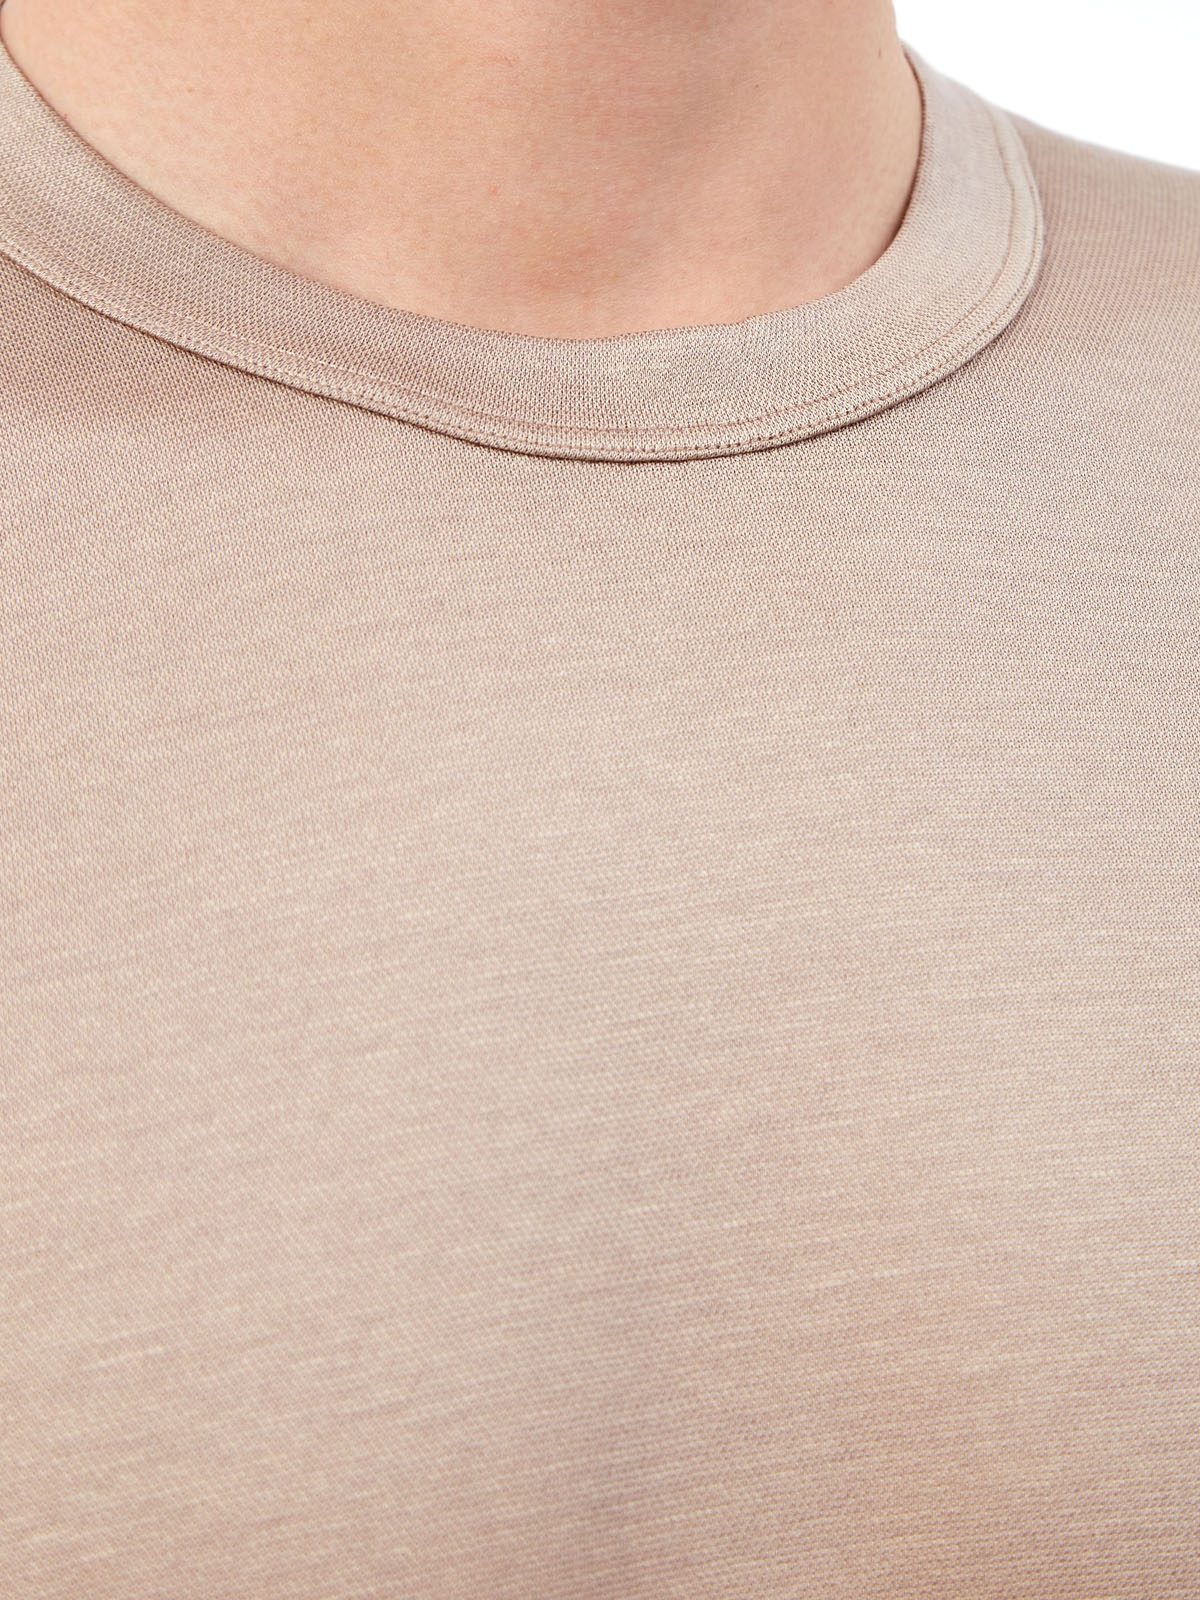 Однотонная футболка из гладкого шелка и хлопка CORTIGIANI, цвет бежевый, размер 50;52;54;56;58;60;62 - фото 5